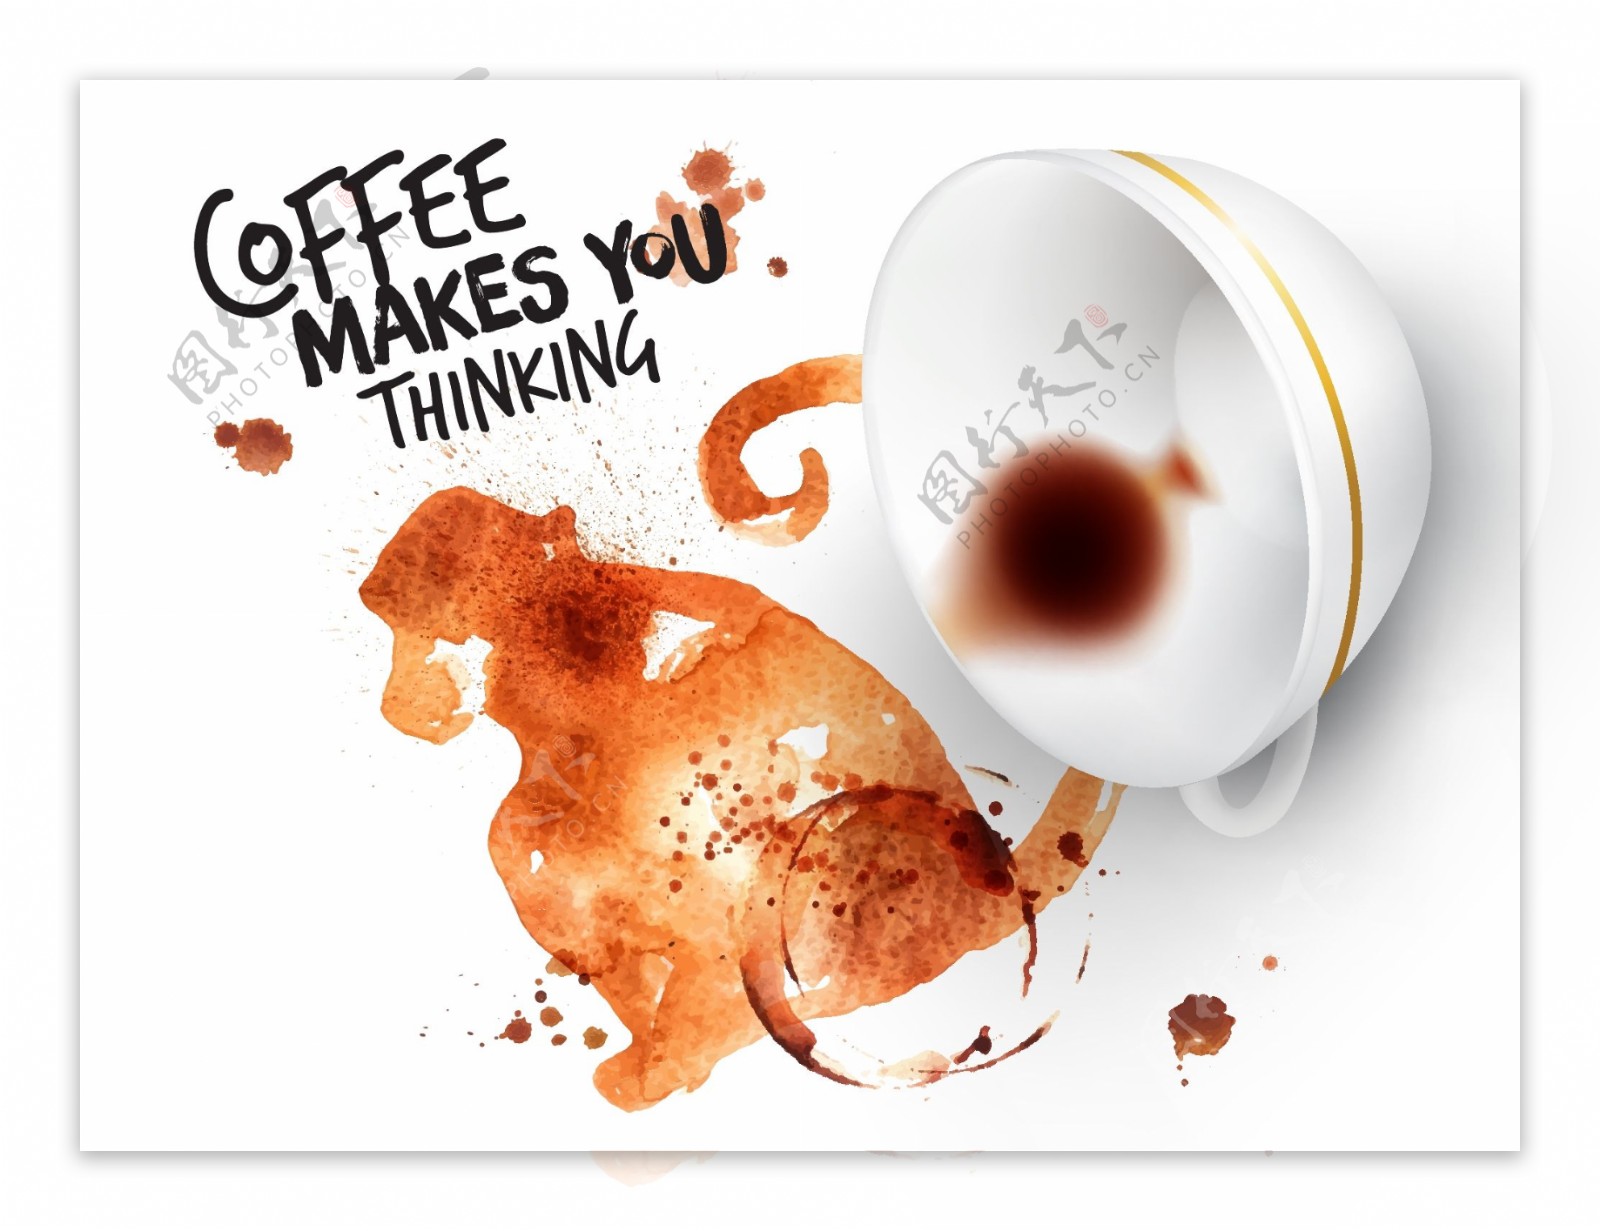 创意咖啡广告